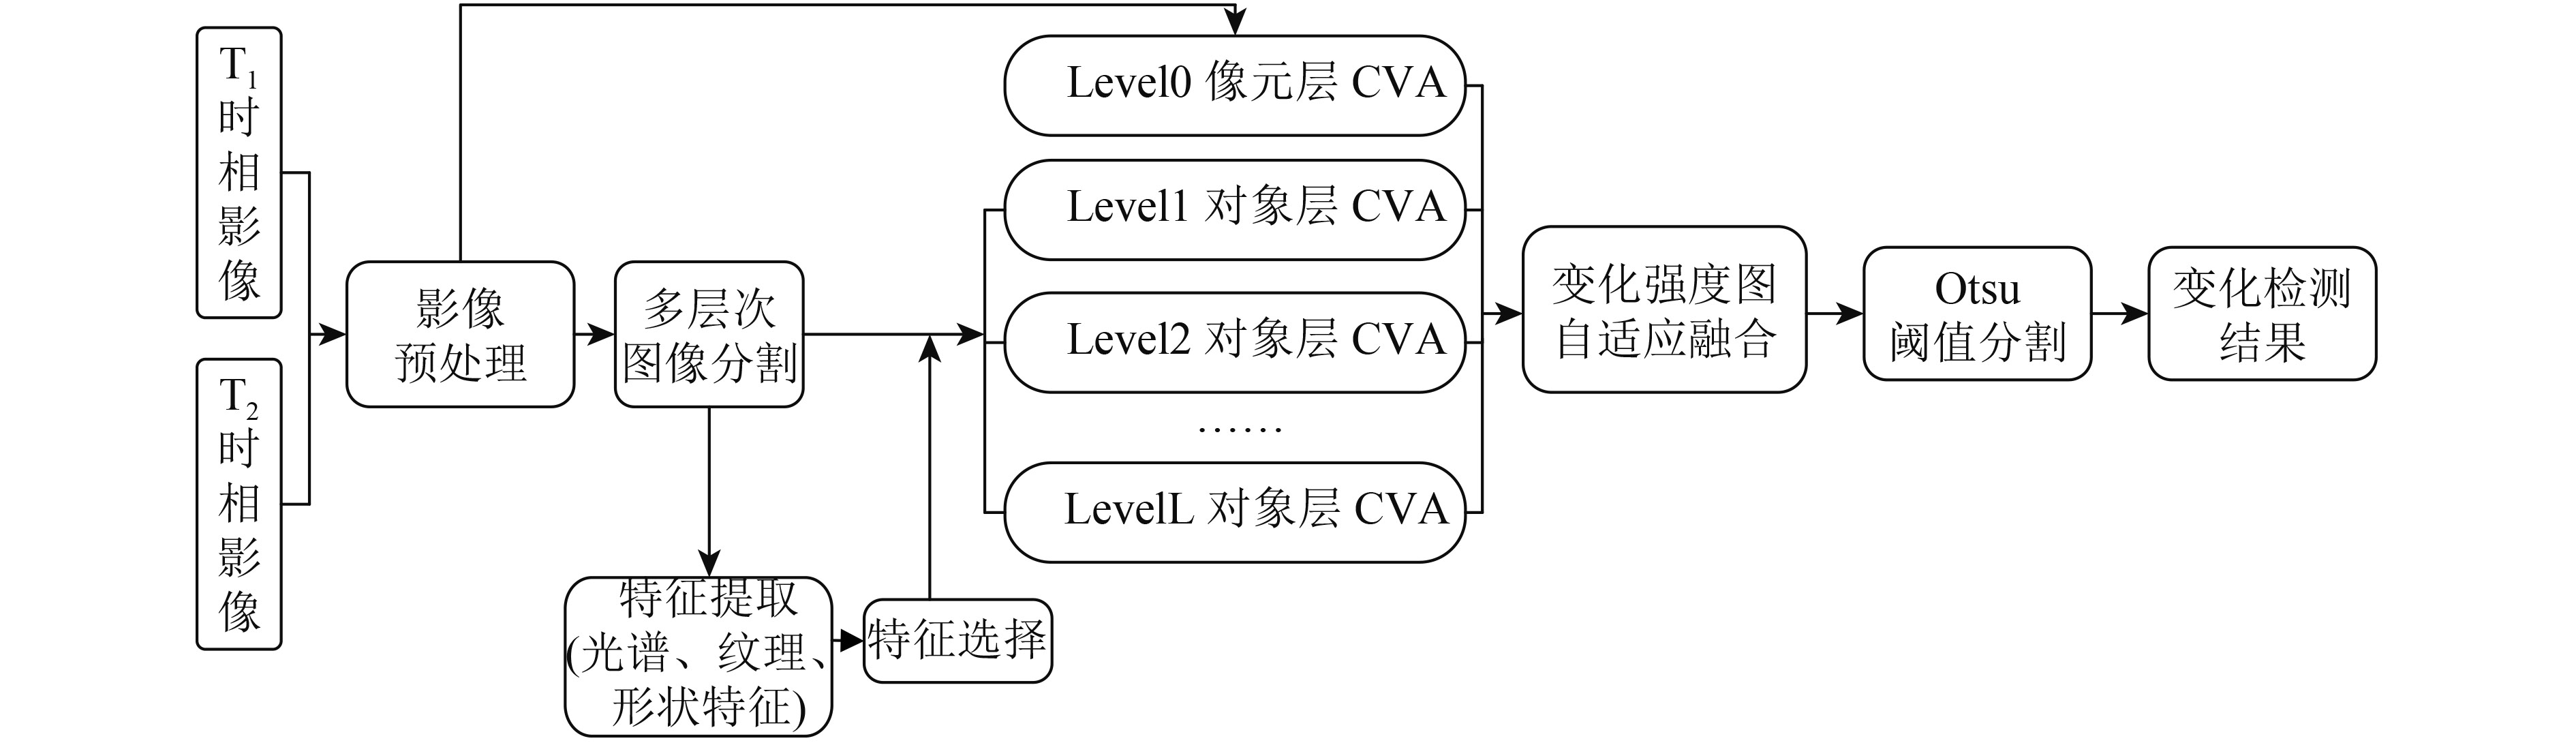 赵敏_图3   多特征分级CVA遥感影像变化检测流程